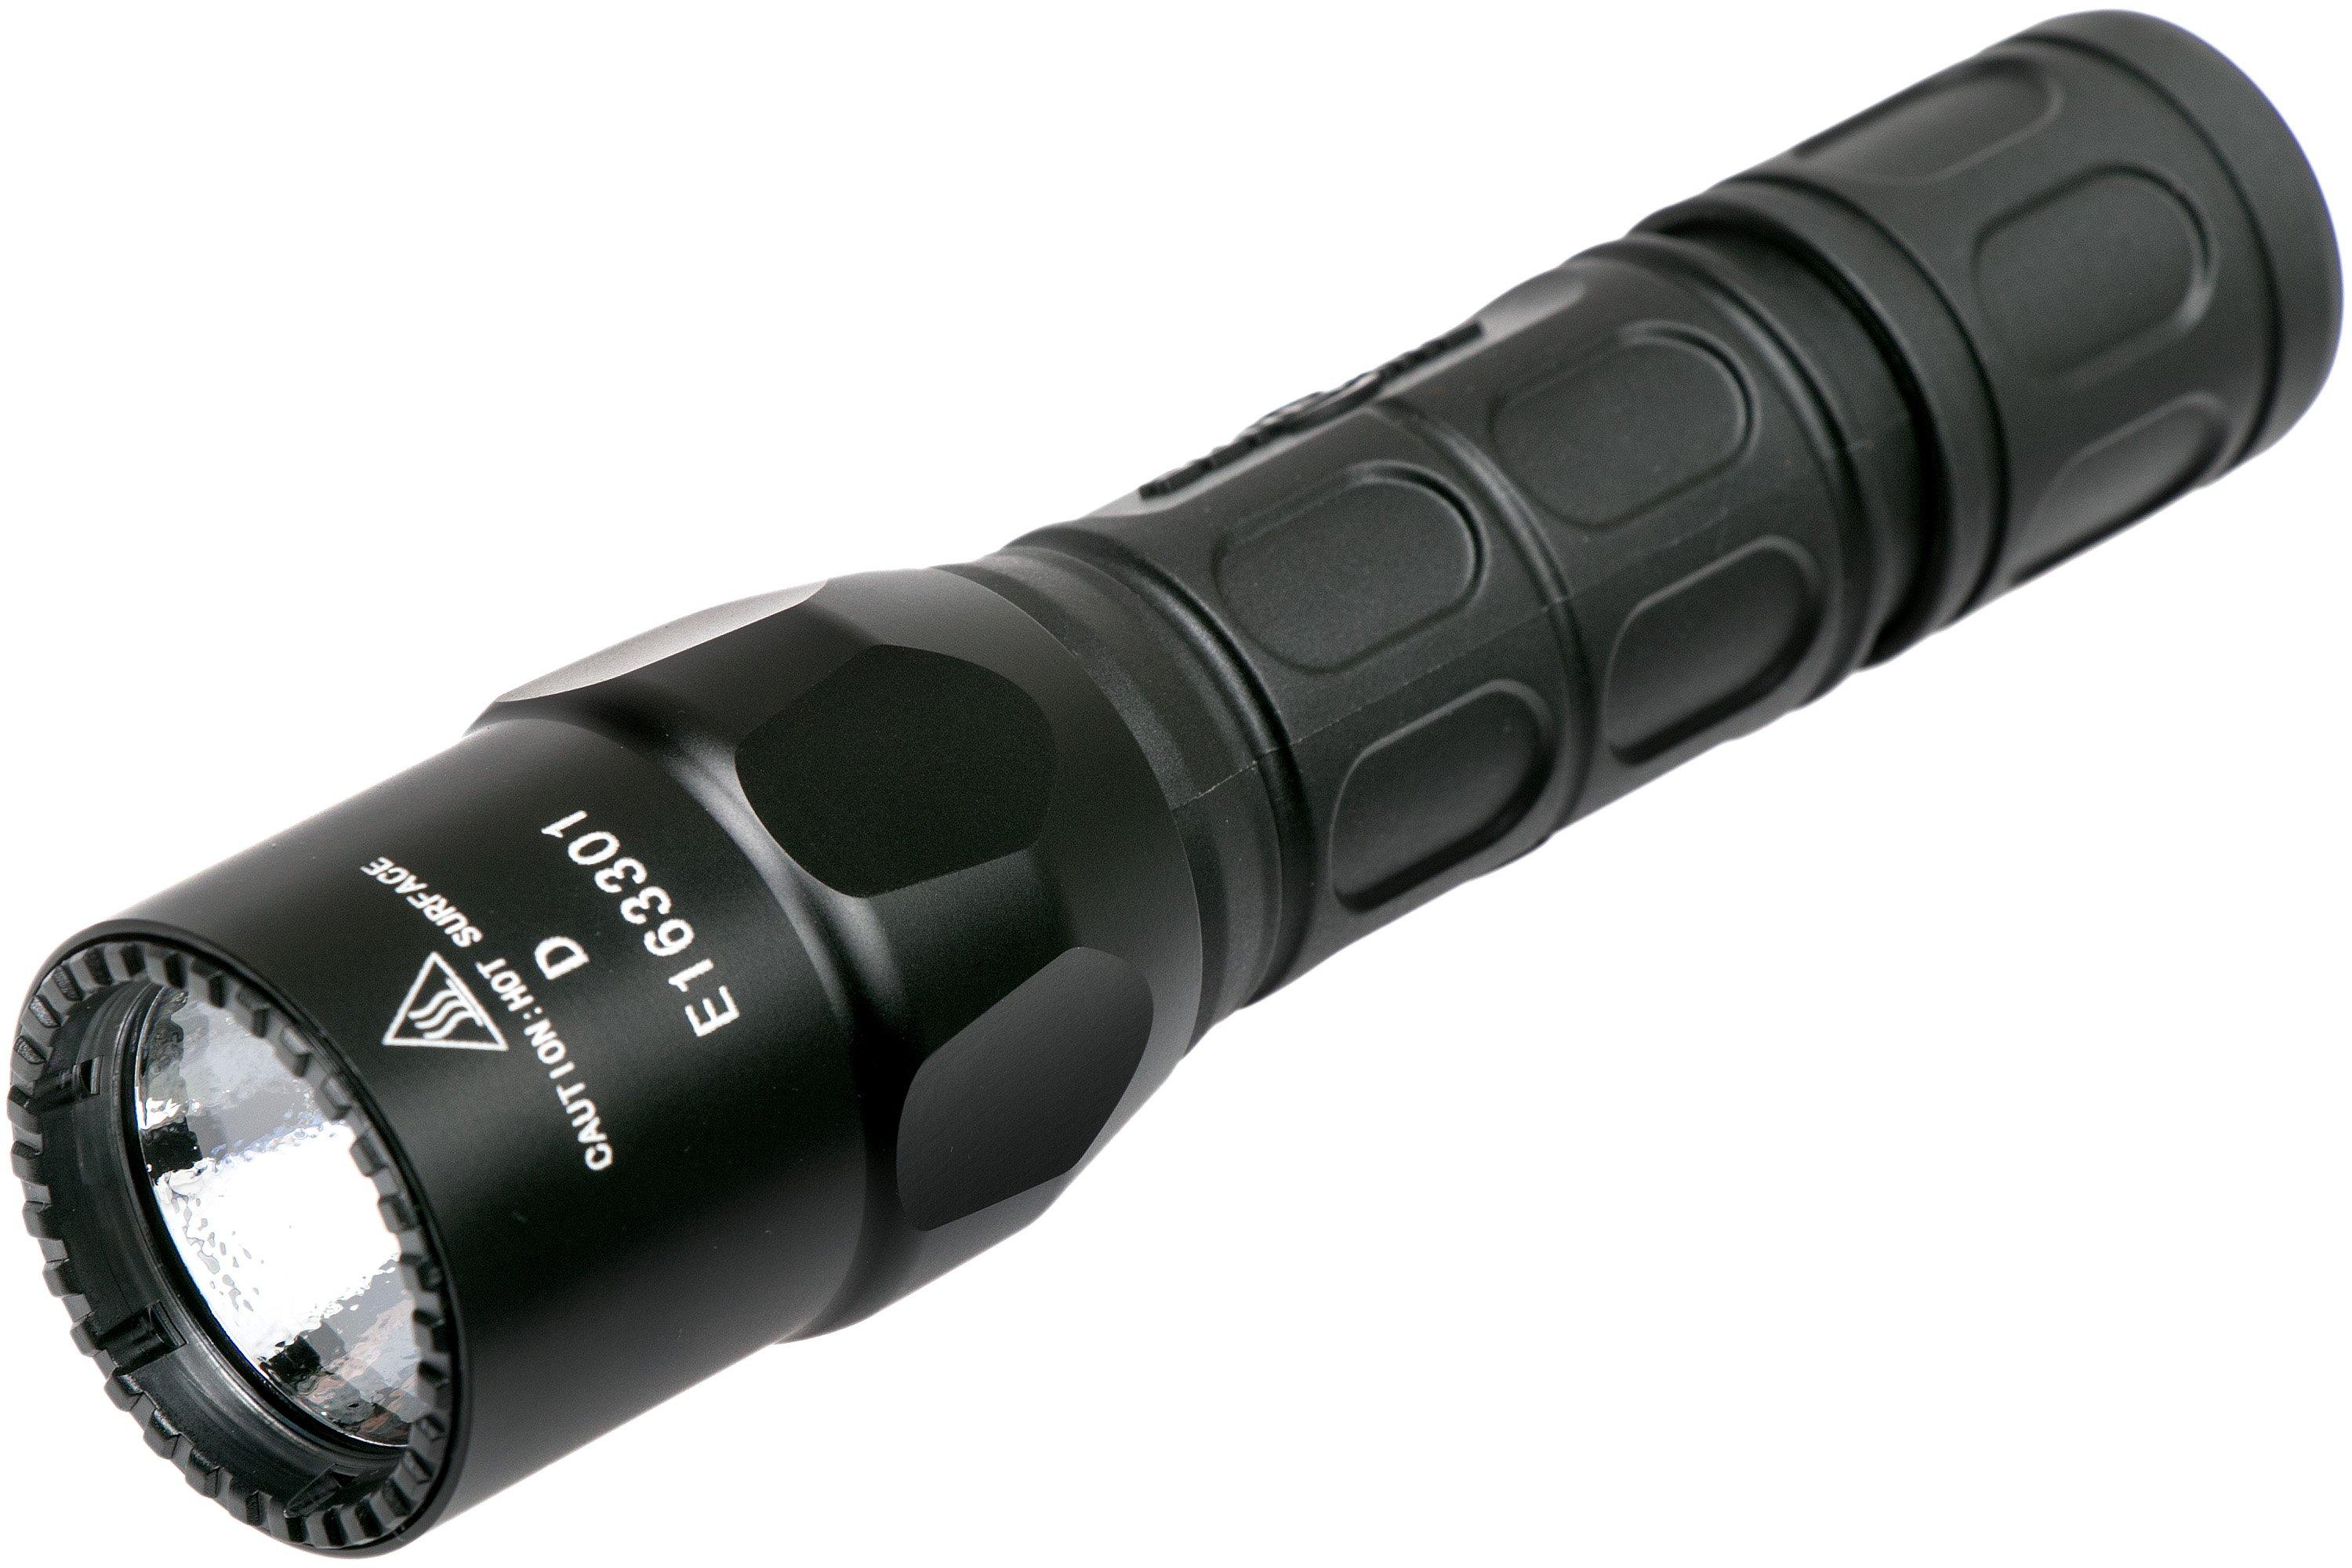 SureFire G2X Pro noire, 600 lumens Advantageously shopping at 